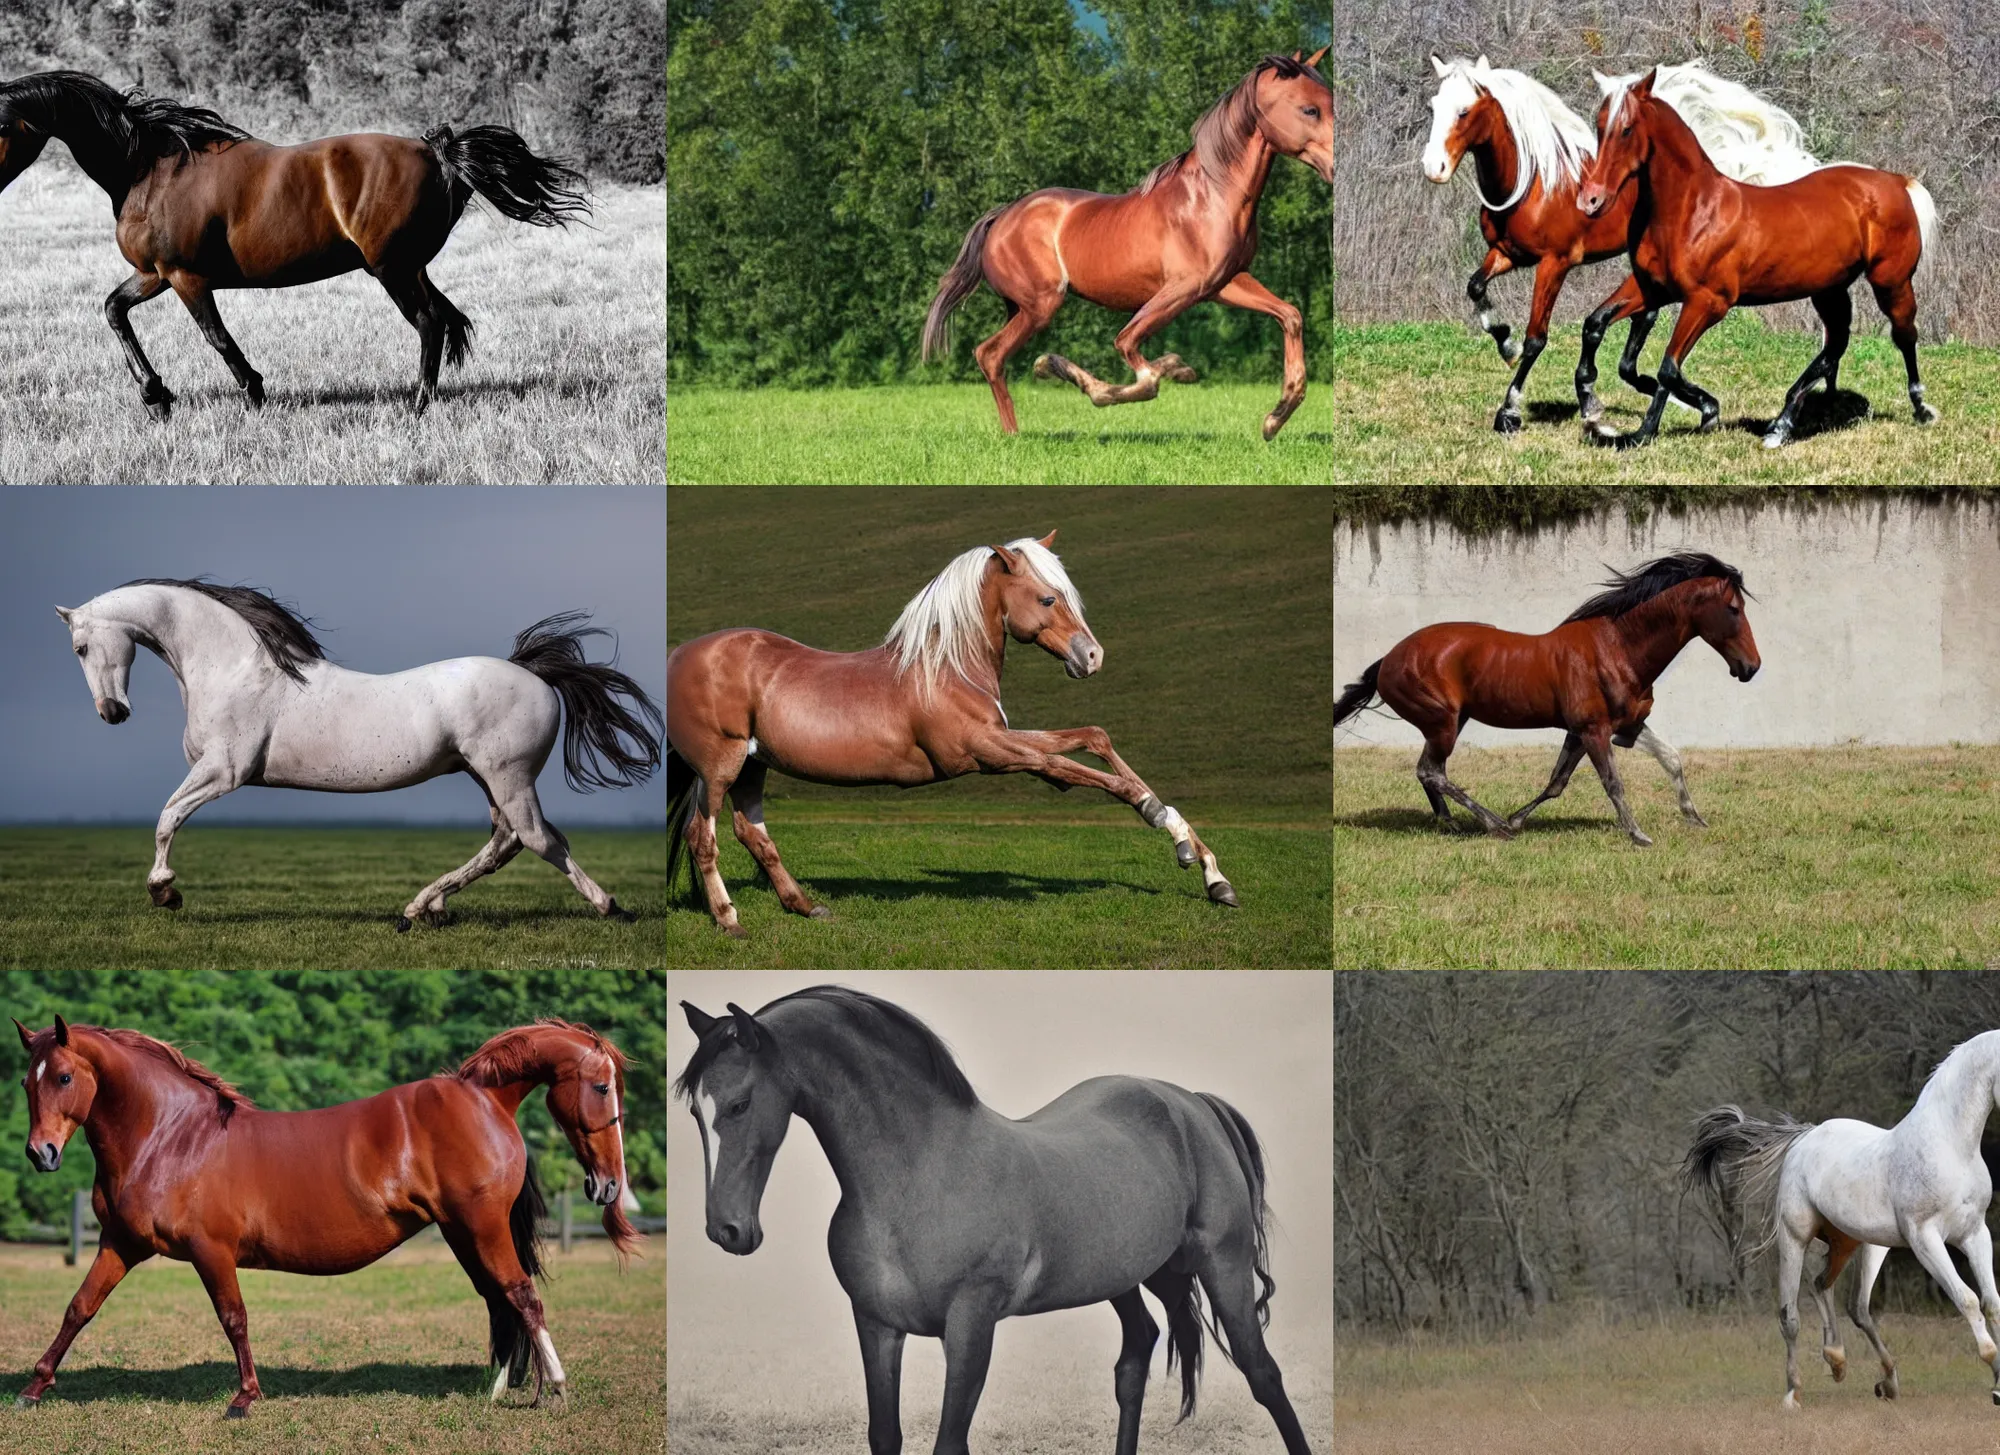 Prompt: six legged horse